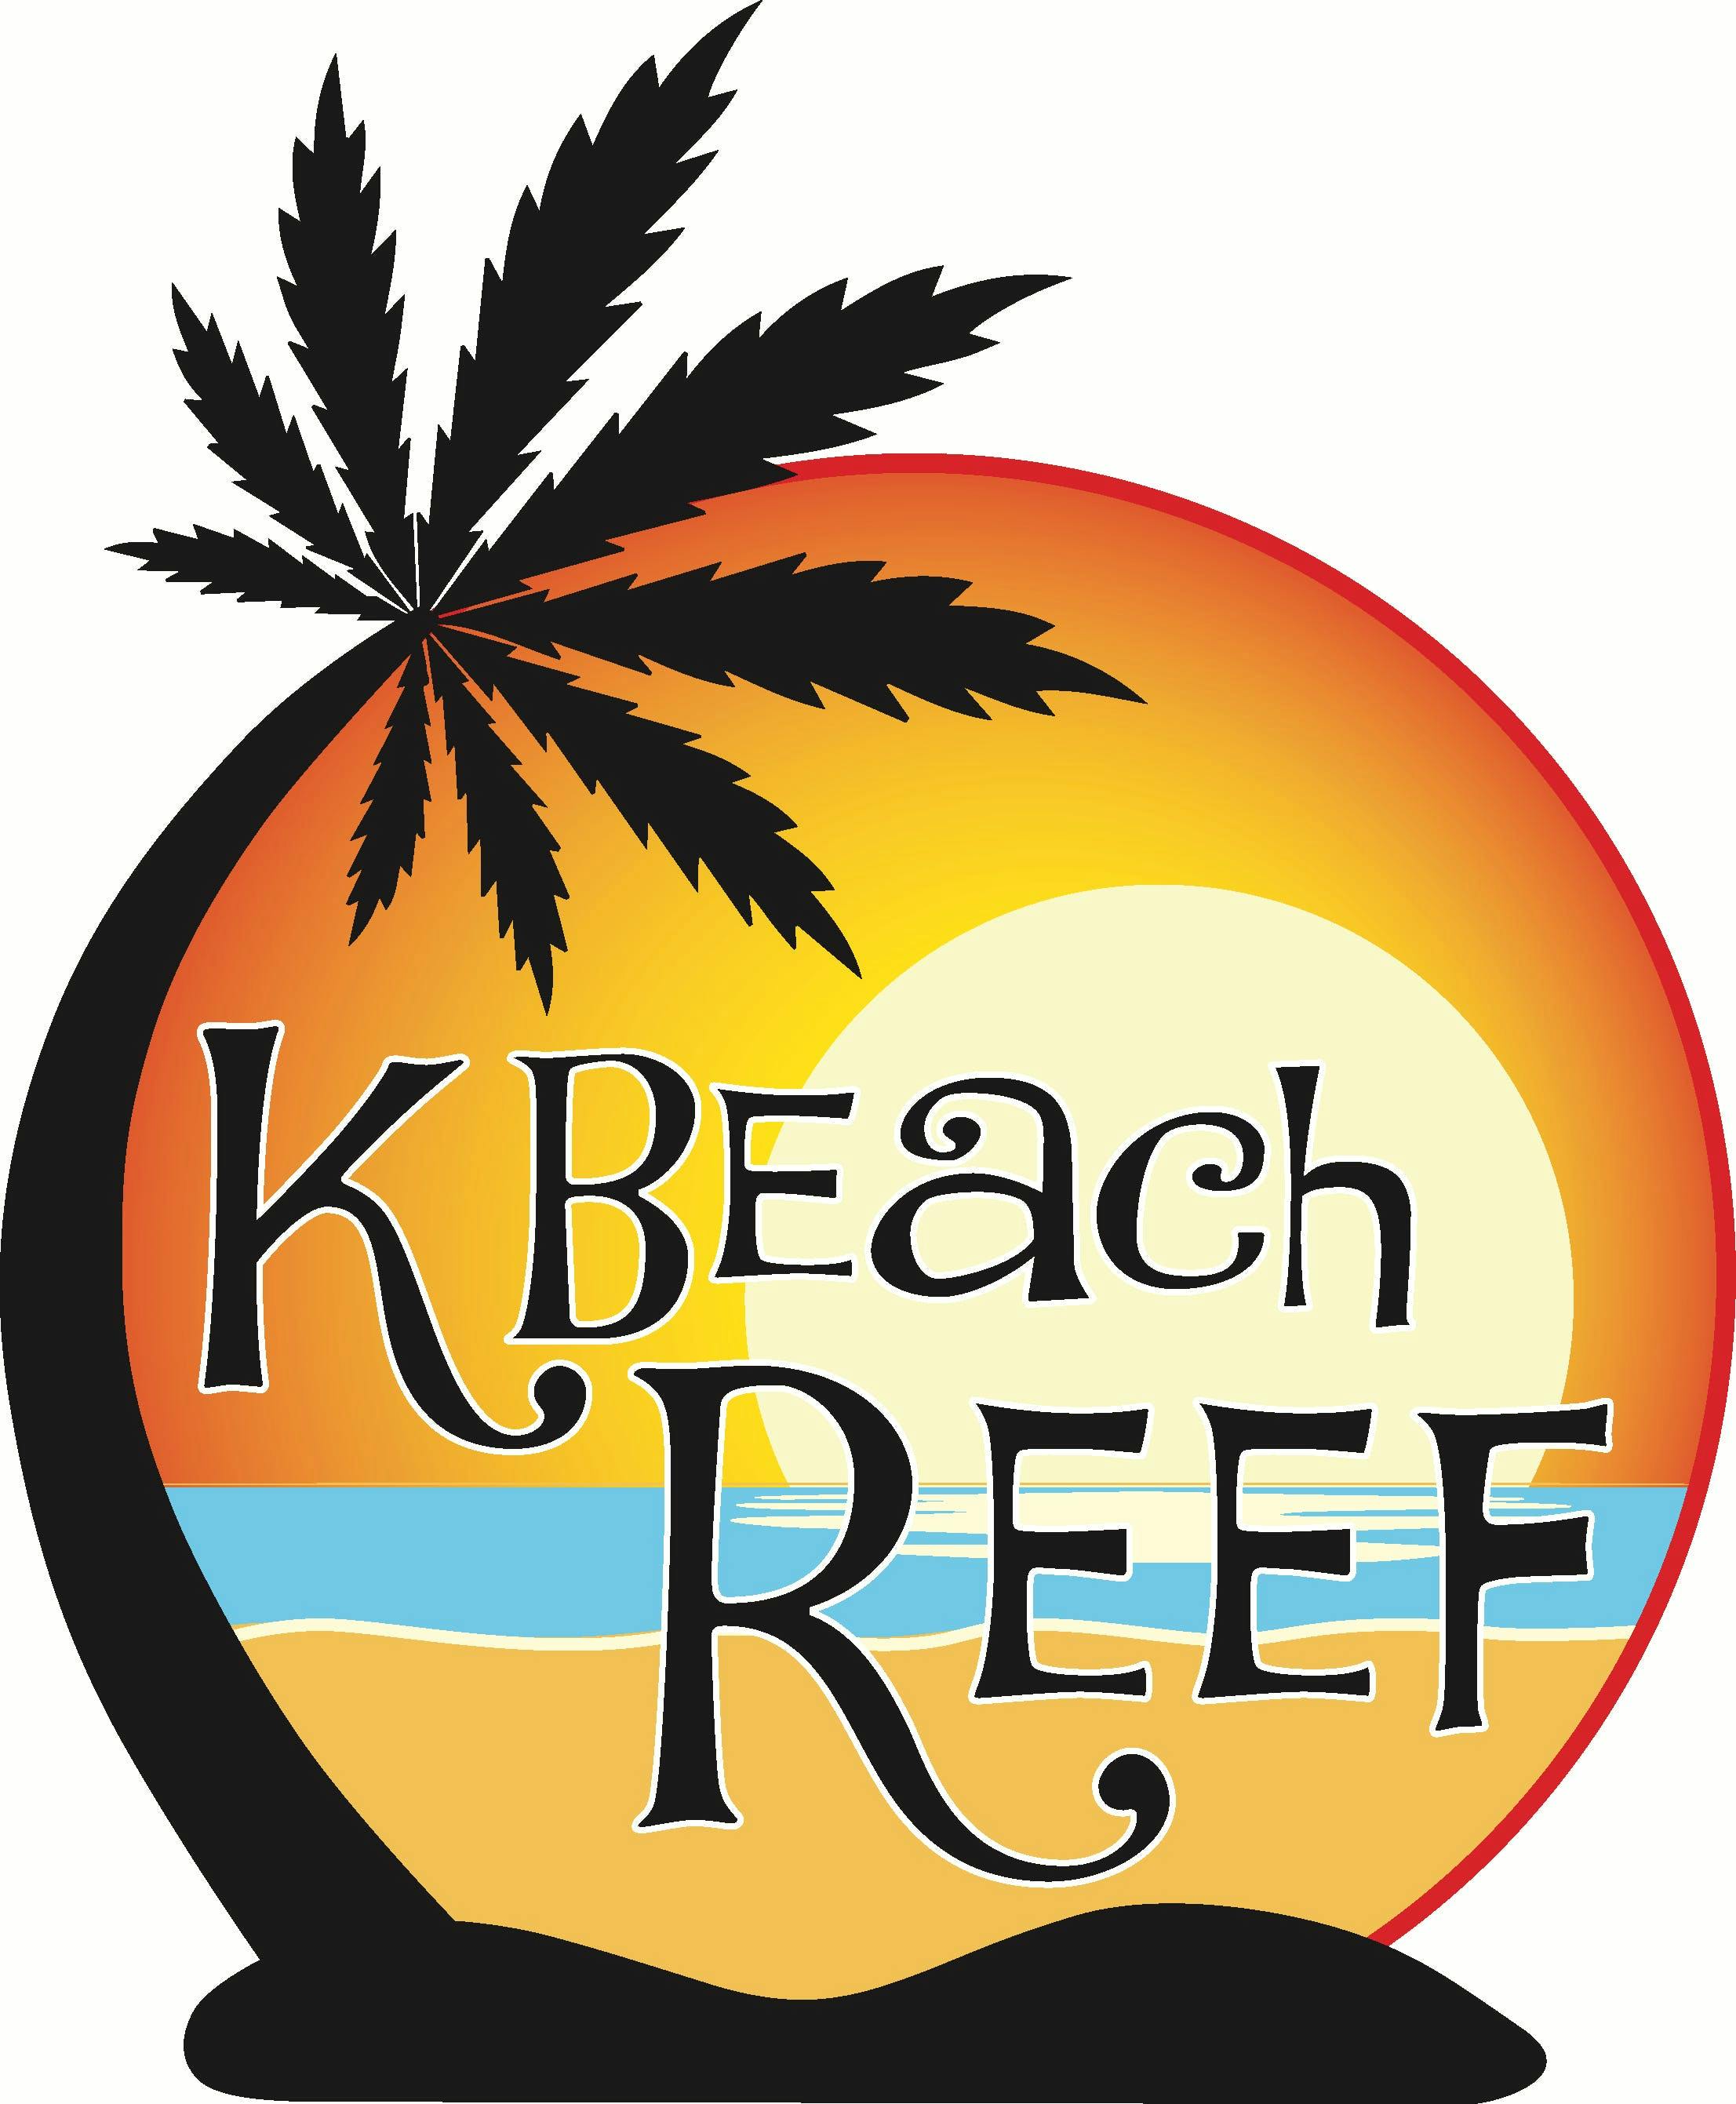 K Beach Reef